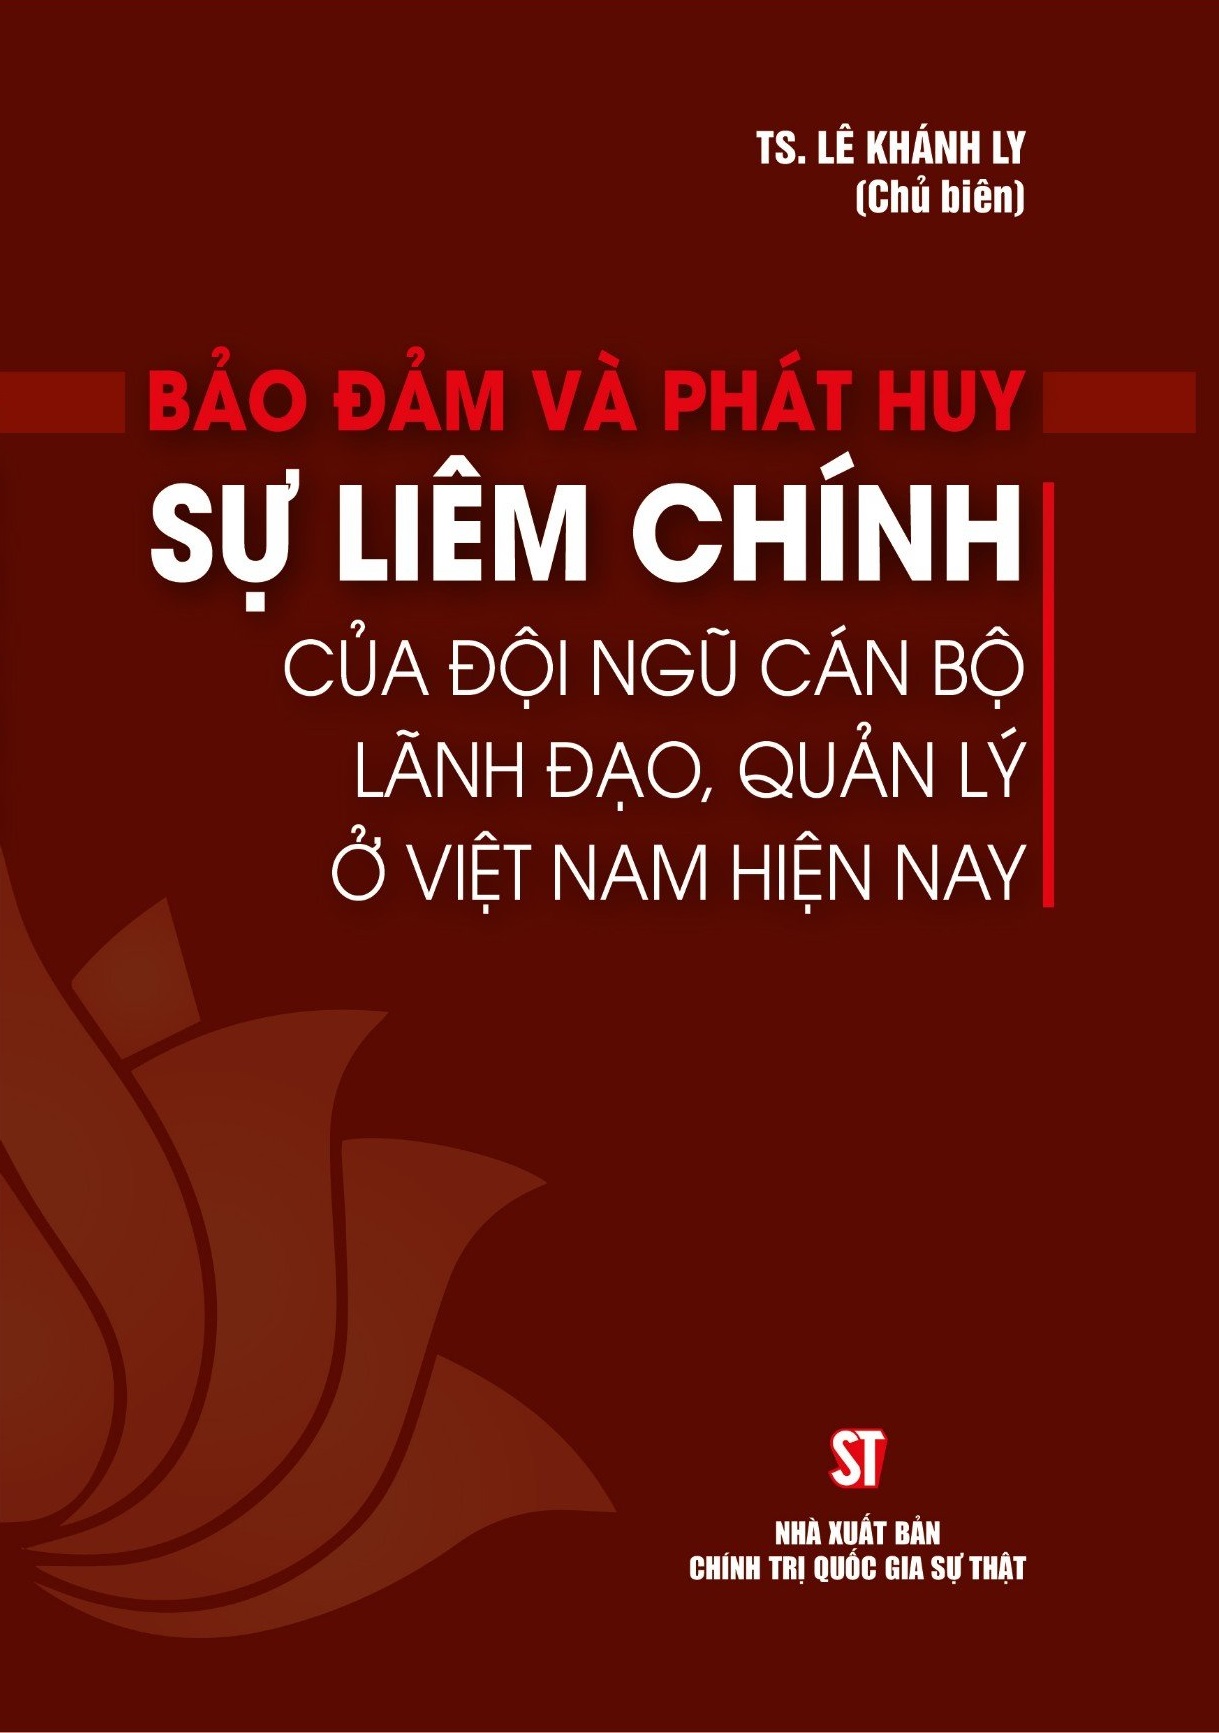 Bảo đảm và phát huy sự liêm chính của đội ngũ cán bộ lãnh đạo, quản lý ở Việt Nam hiện nay